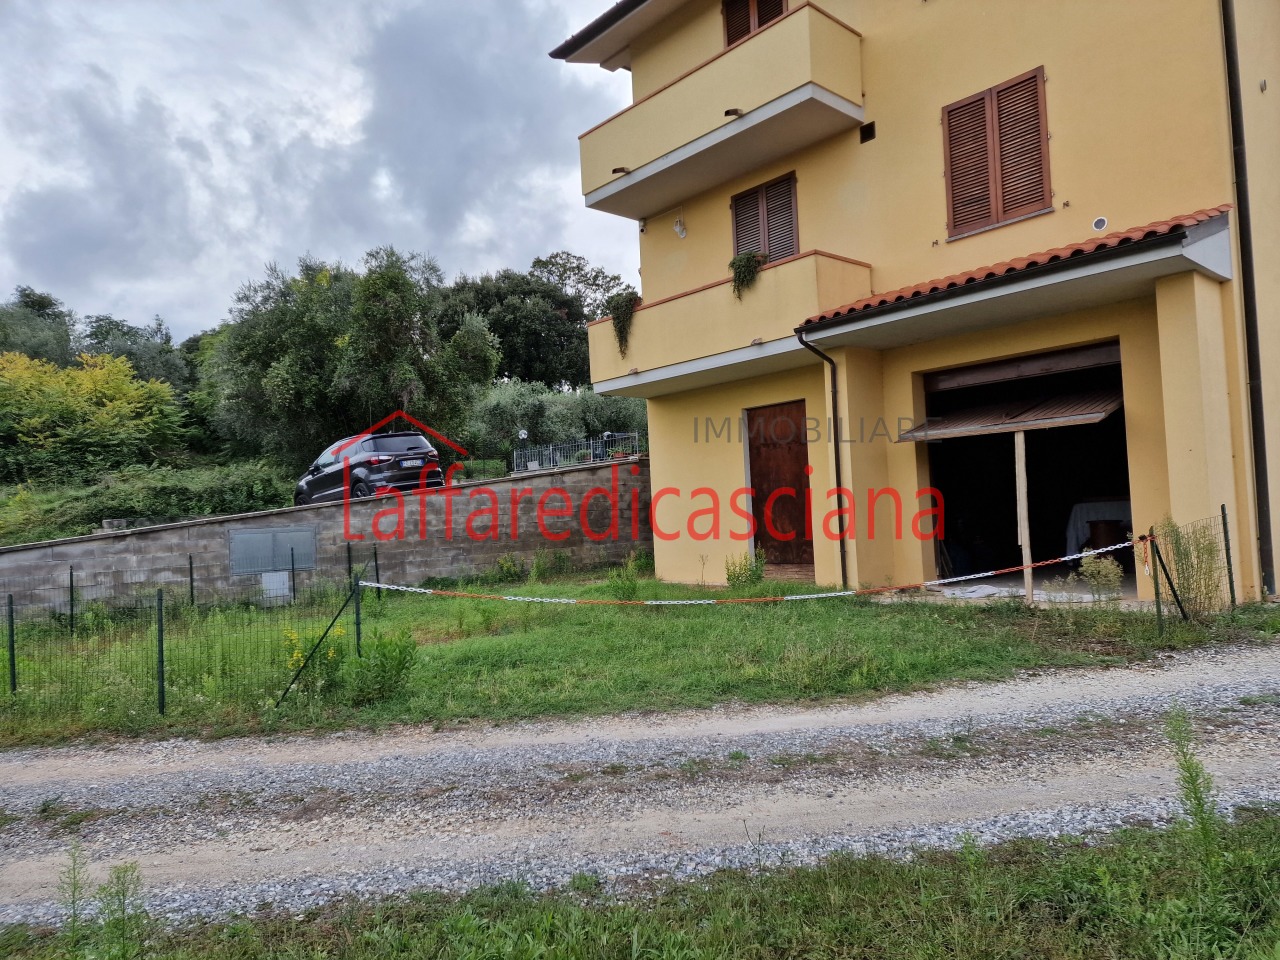 Appartamento in vendita a Casciana Terme Lari, 4 locali, prezzo € 65.000 | PortaleAgenzieImmobiliari.it